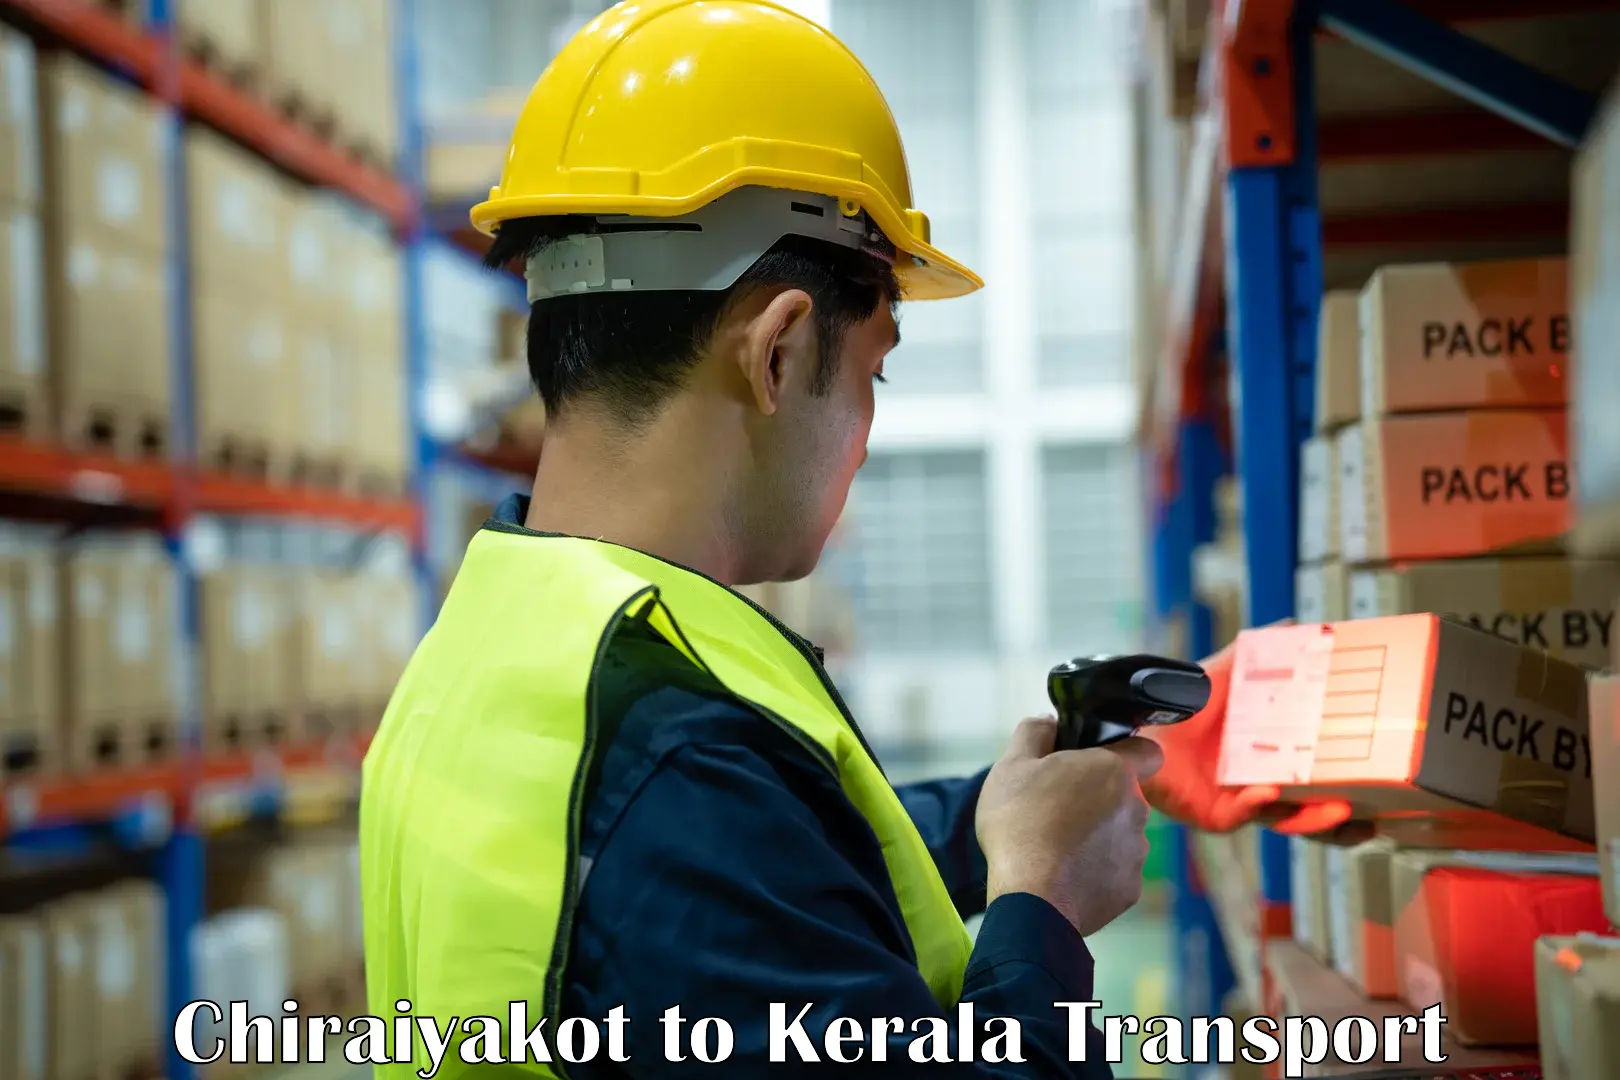 Shipping services Chiraiyakot to Kerala